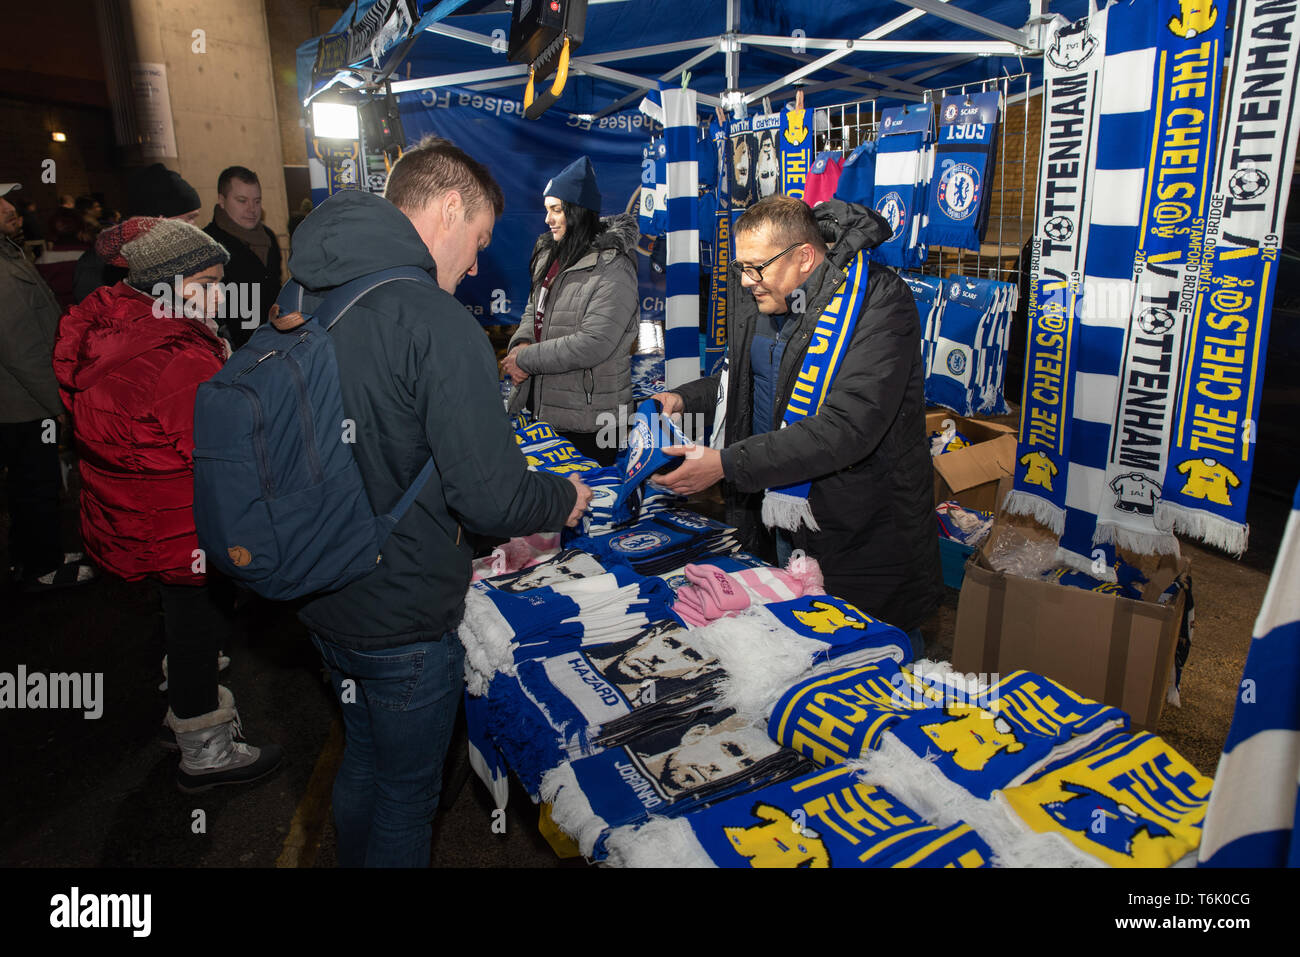 Sostenitore di acquistare un Chelsea sciarpa vicino Stadio Stamford Bridge, Chelsea F.C della casa. Foto Stock